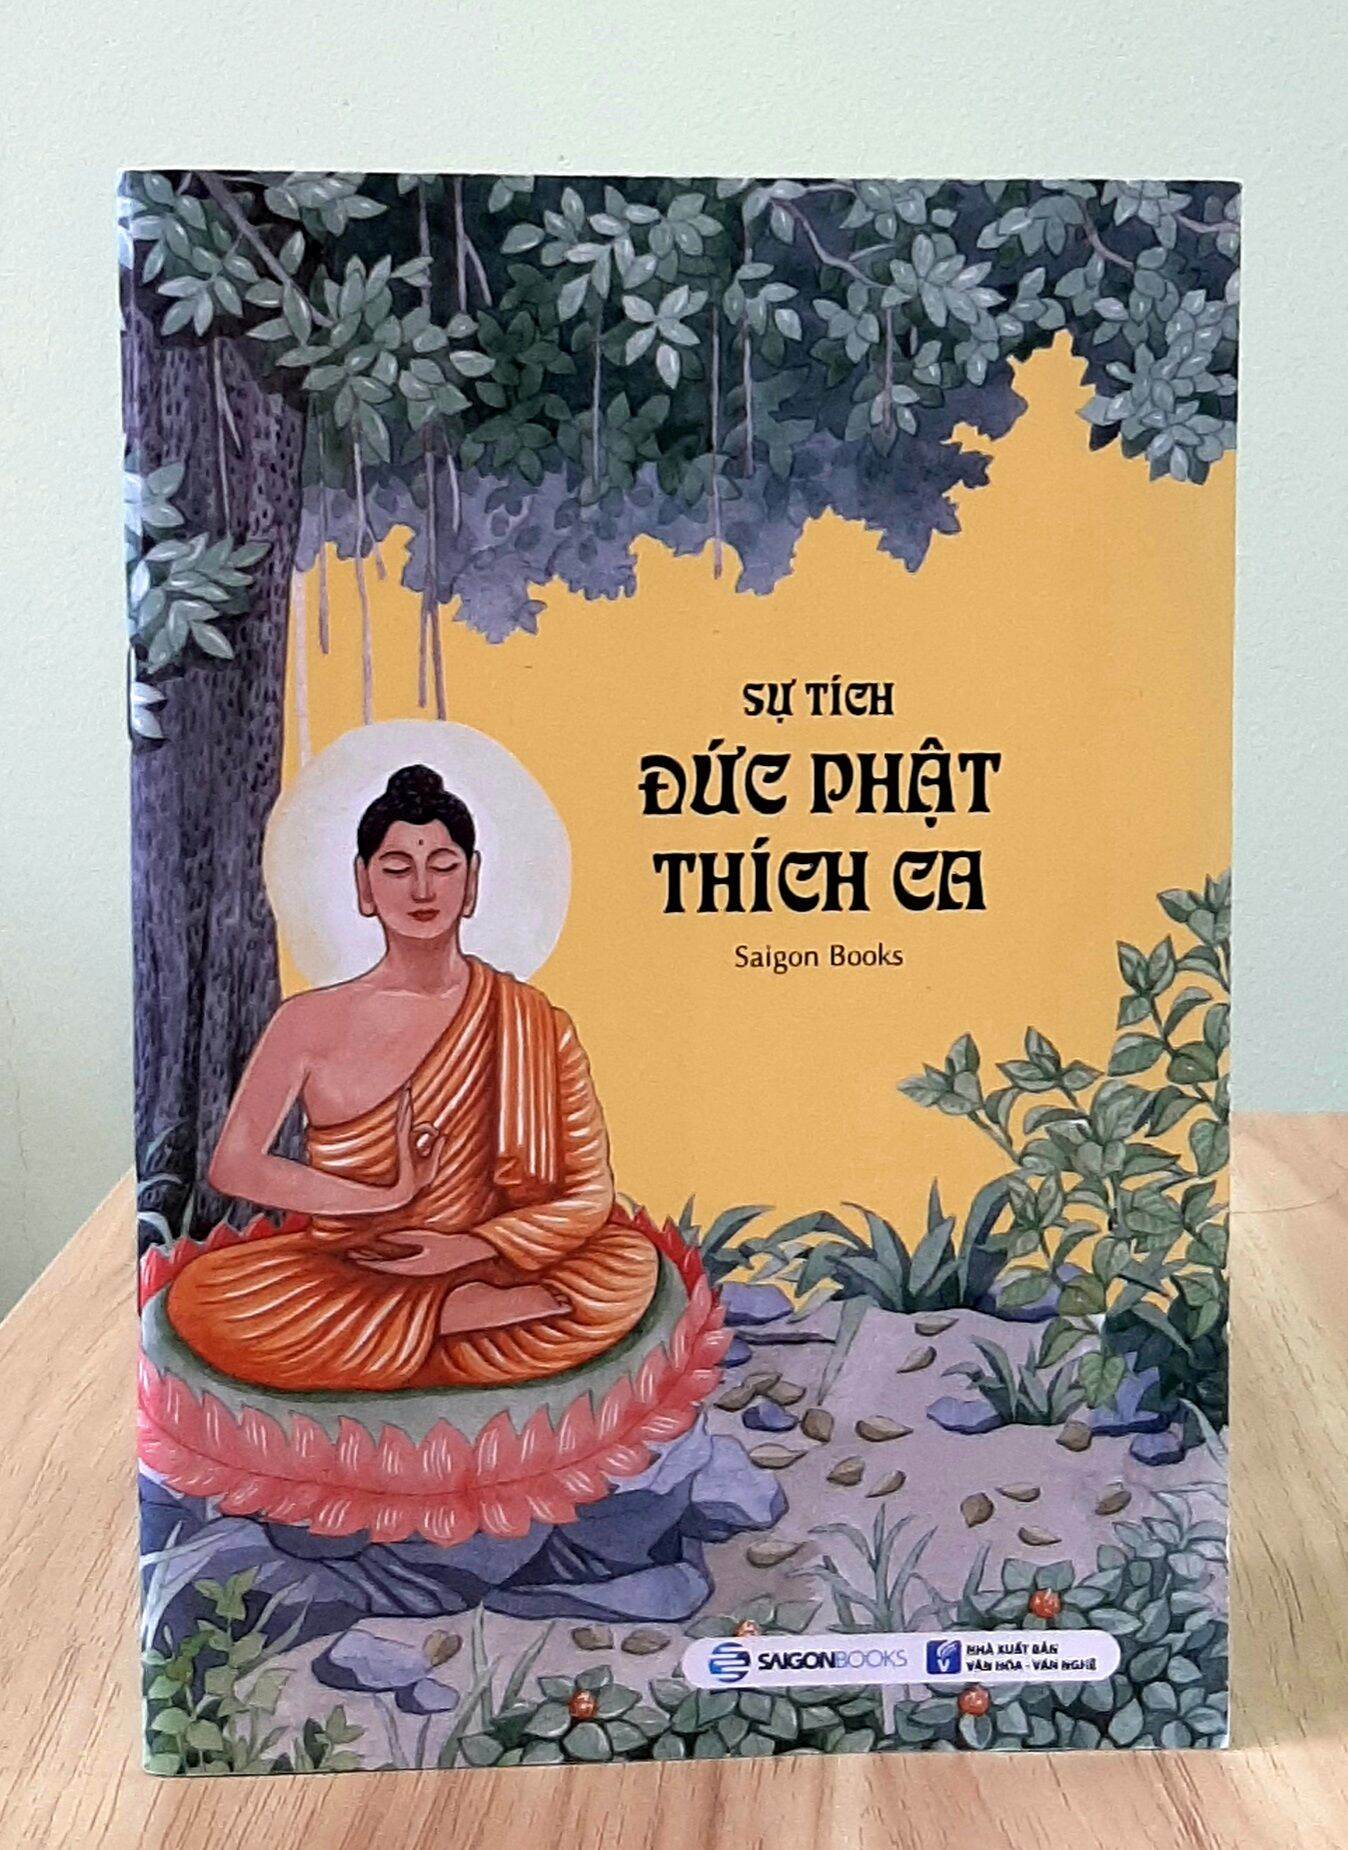 Sách - Sự Tích Đức Phật Thích Ca Bằng Tranh